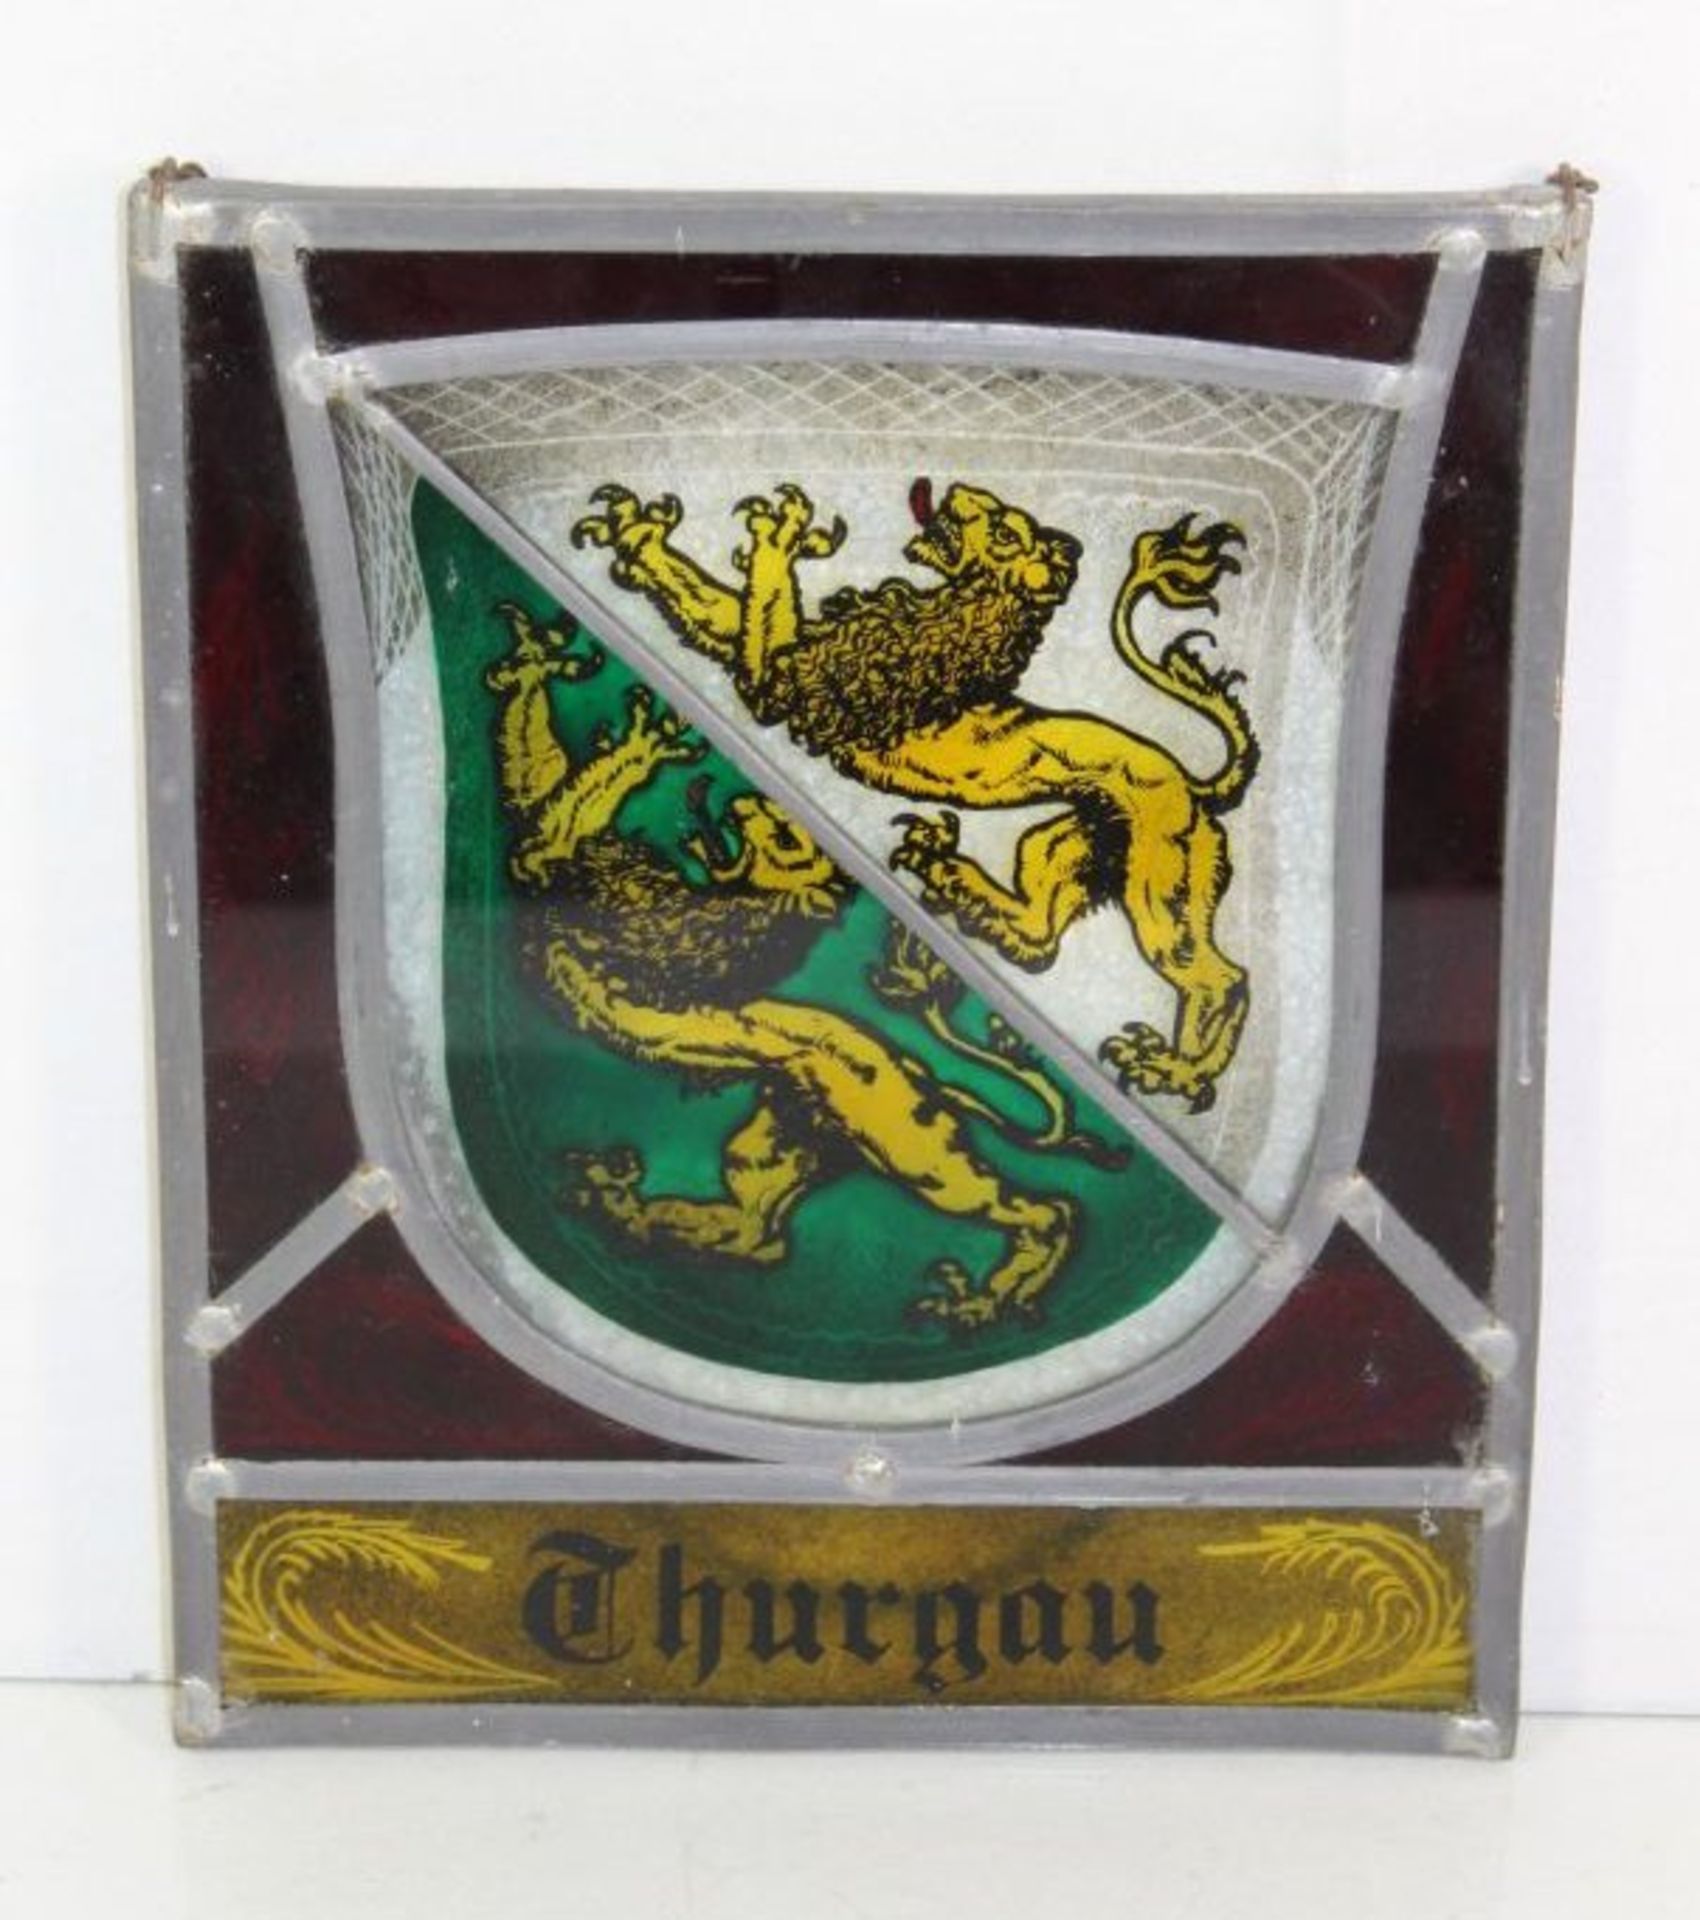 Fensterbild, Wappen von Thurgau, 24 x 20cm.- - -22.61 % buyer's premium on the hammer priceVAT